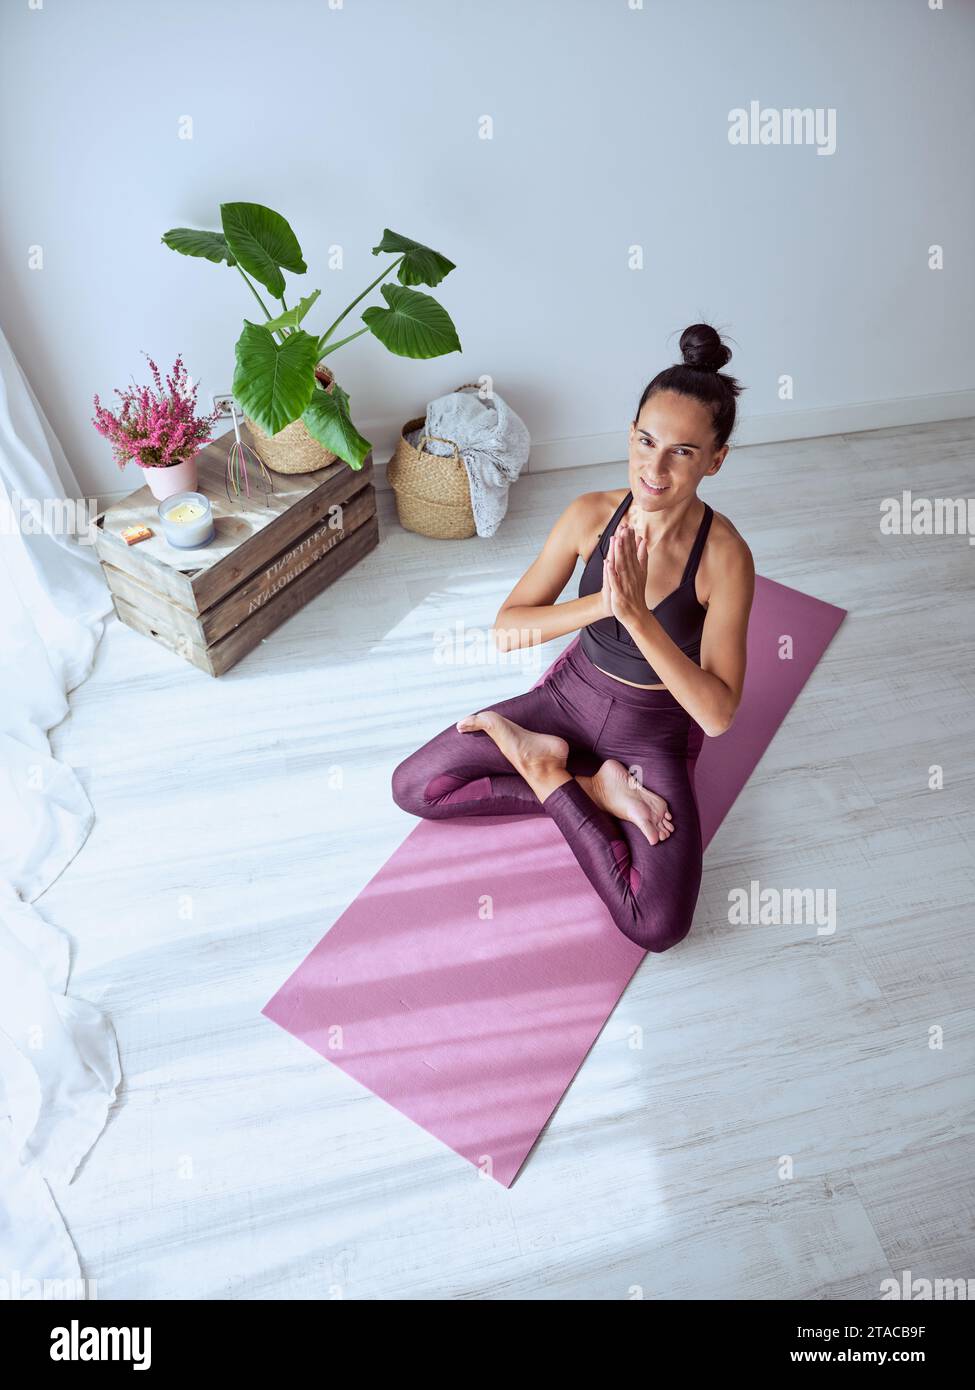 Alto ángulo de mujer sonriente en ropa deportiva sentado en esterilla de yoga púrpura en pose de loto con gesto de namaste y mirando a la cámara en casa Foto de stock